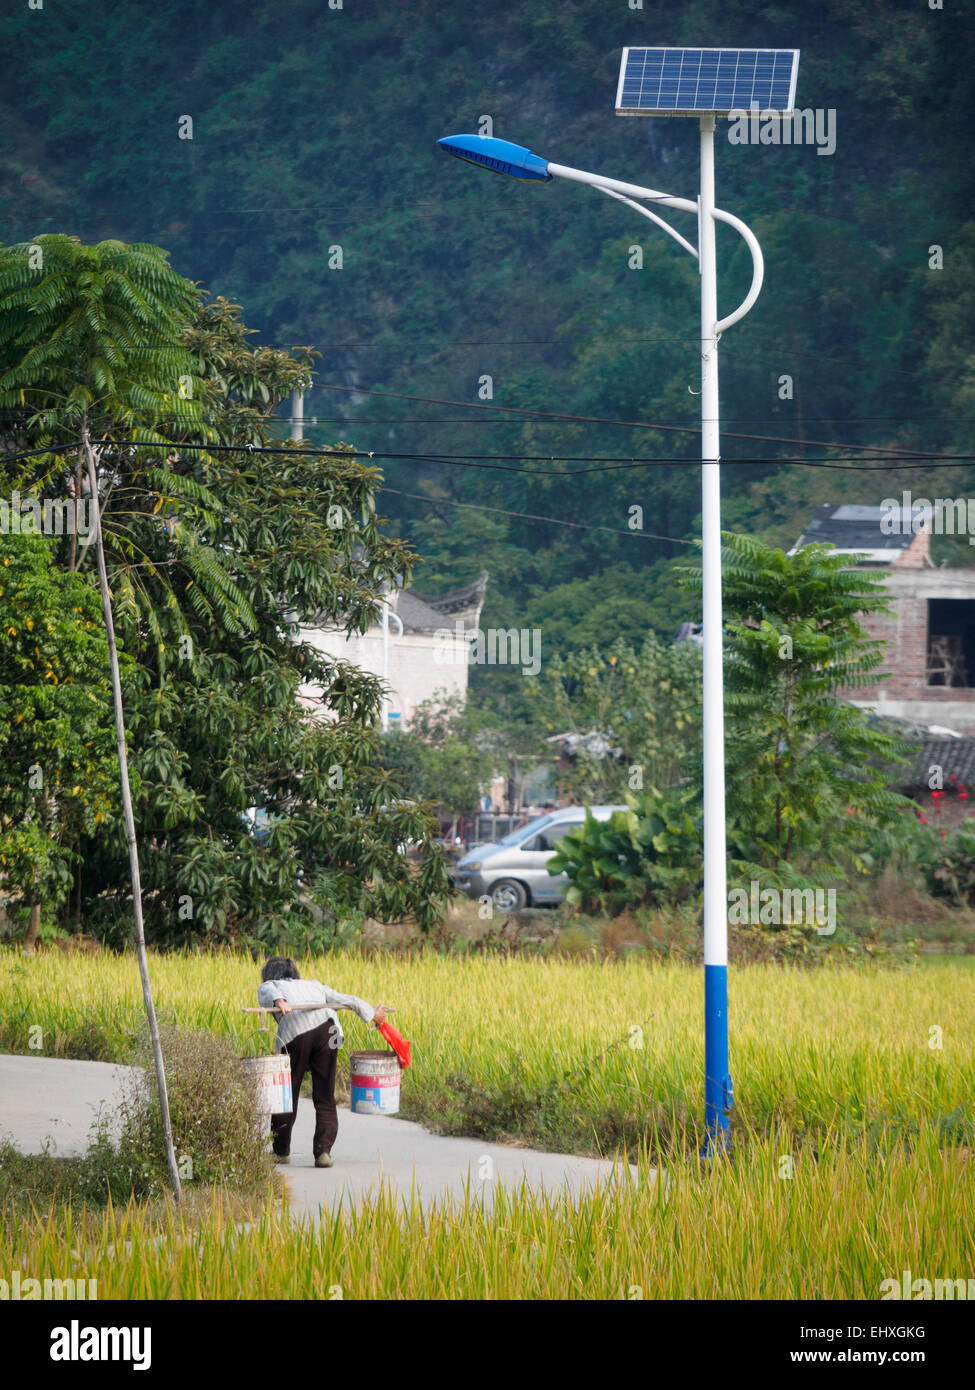 Solarbetriebene Laternenpfahl auf einer ländlichen Gegend in China, Asien Stockfoto